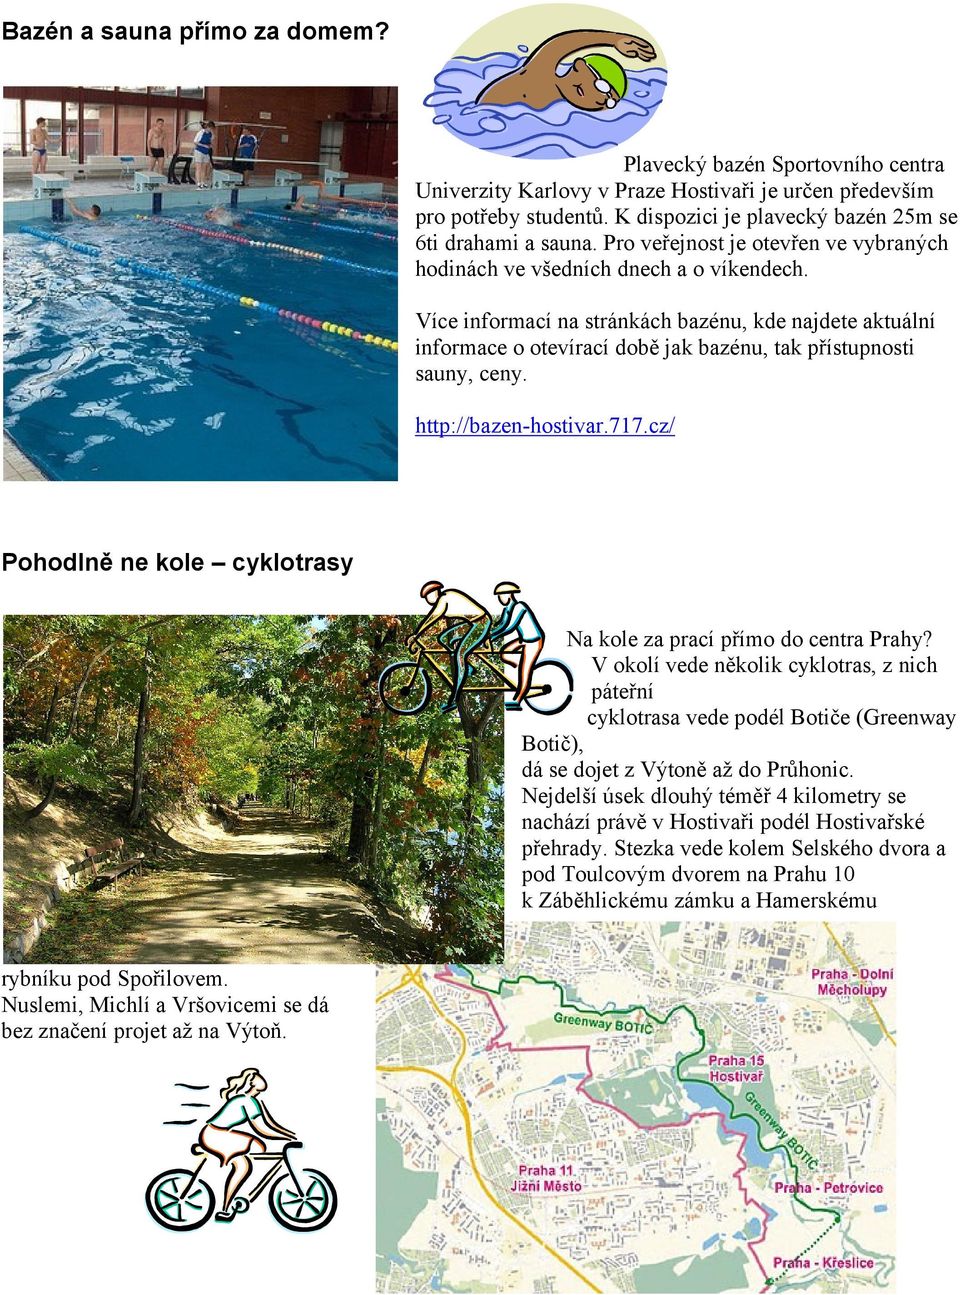 Více informací na stránkách bazénu, kde najdete aktuální informace o otevírací době jak bazénu, tak přístupnosti sauny, ceny. http://bazen-hostivar.717.